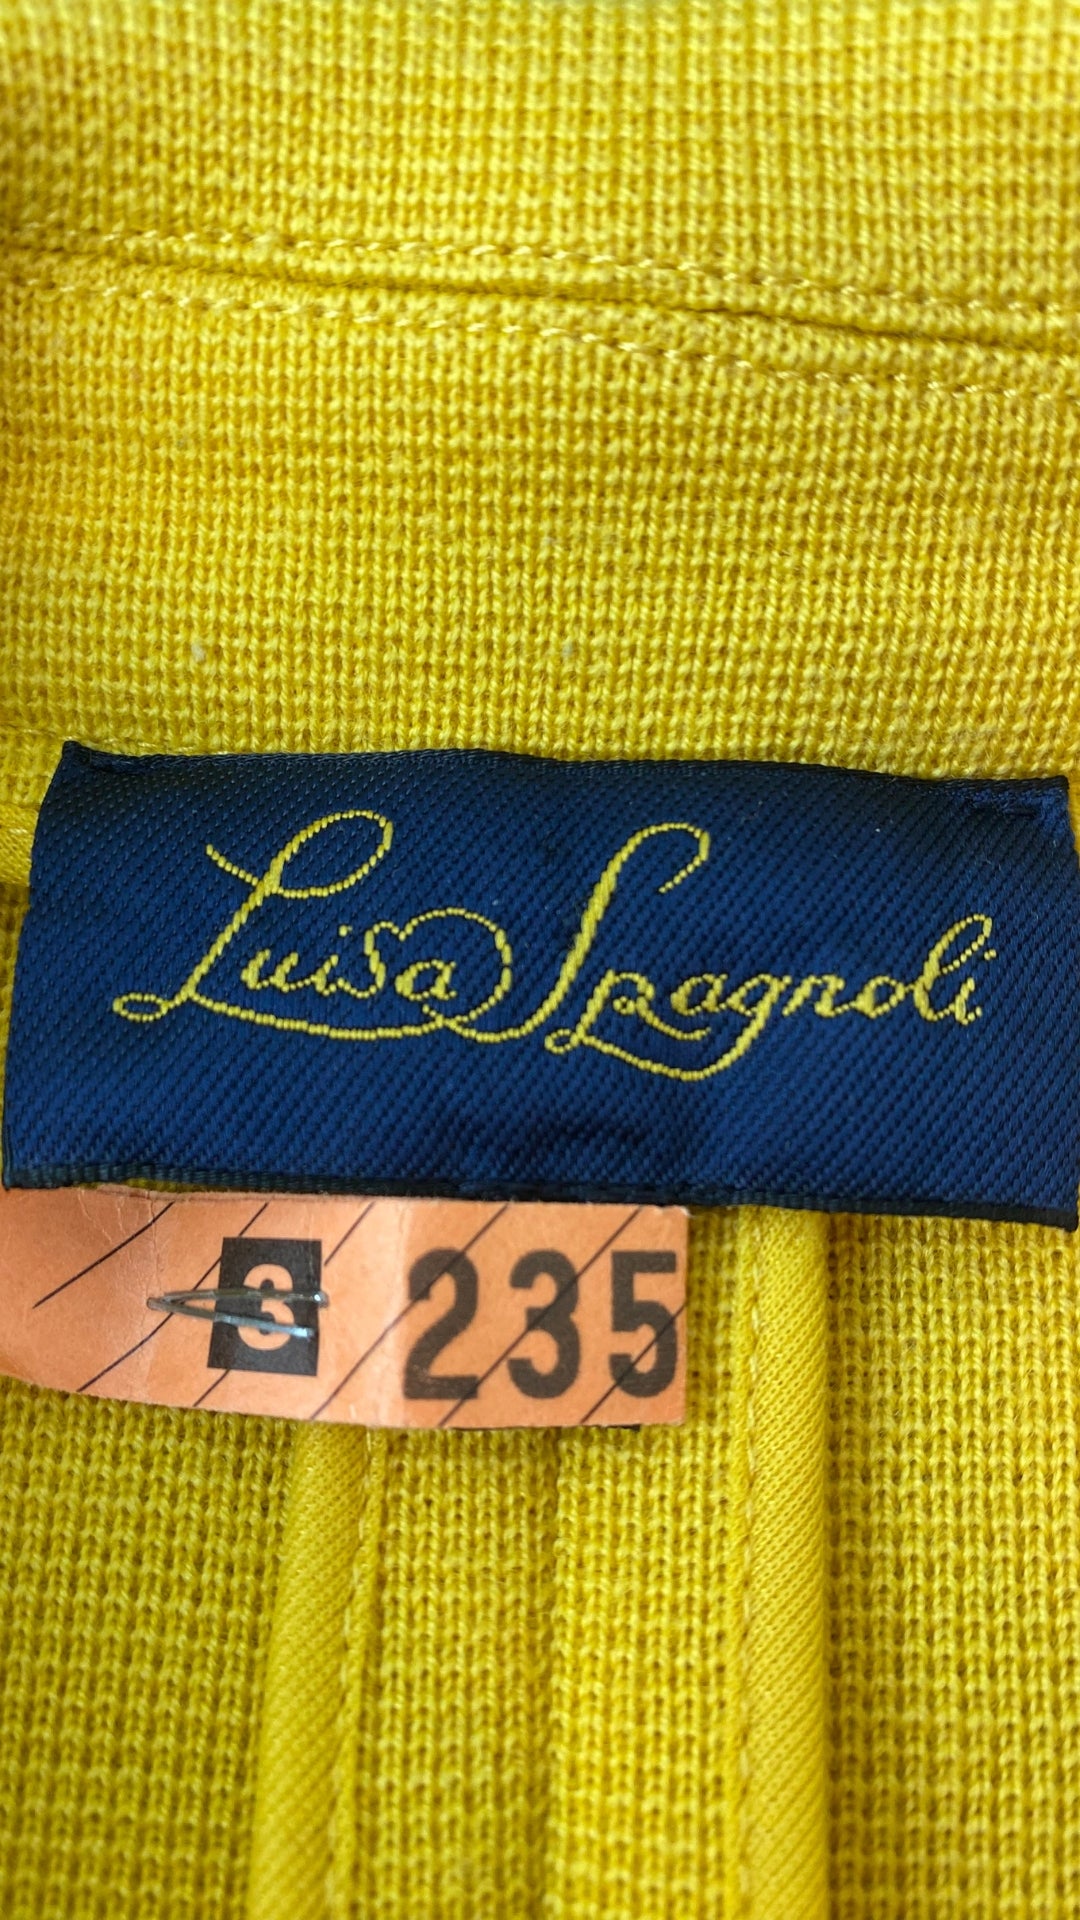 Veste style blazer jaune doré en laine Luisa Spagnoli, taille small. Vue de l'étiquette de la marque.